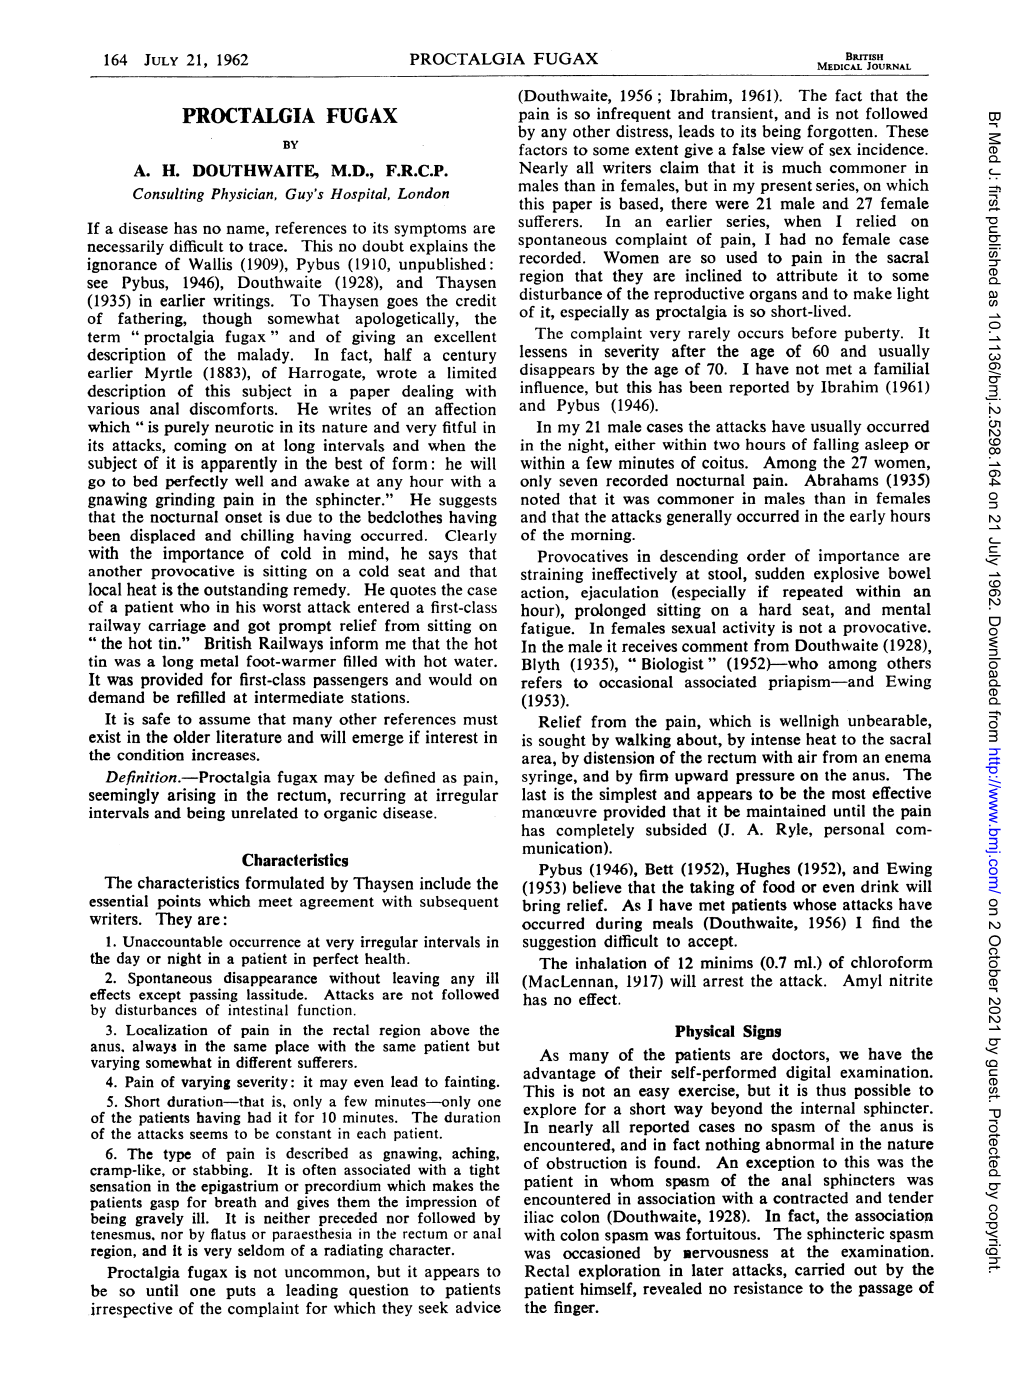 PROCTALGIA FUGAX MEDICAL JOURNAL (Douthwaite, 1956; Ibrahim, 1961)